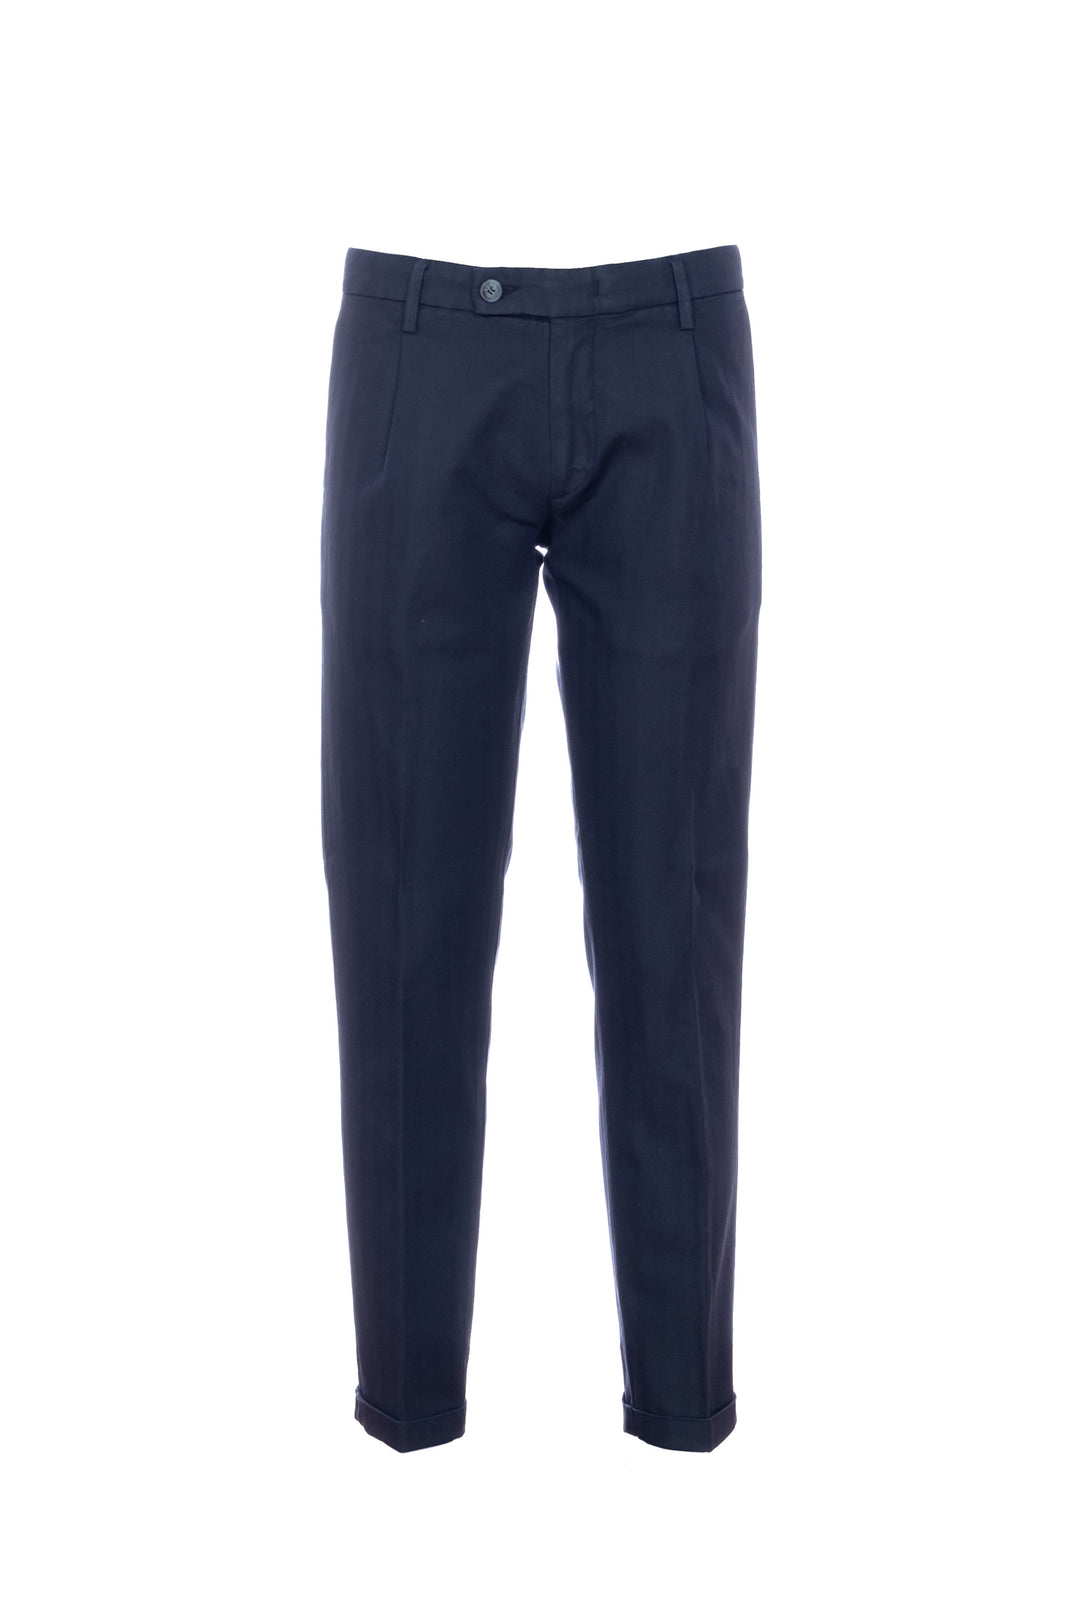 RE-HASH Pantalone chinos “MUCHA-P1C” blu a righe in cotone e lino con risvolto - Mancinelli 1954